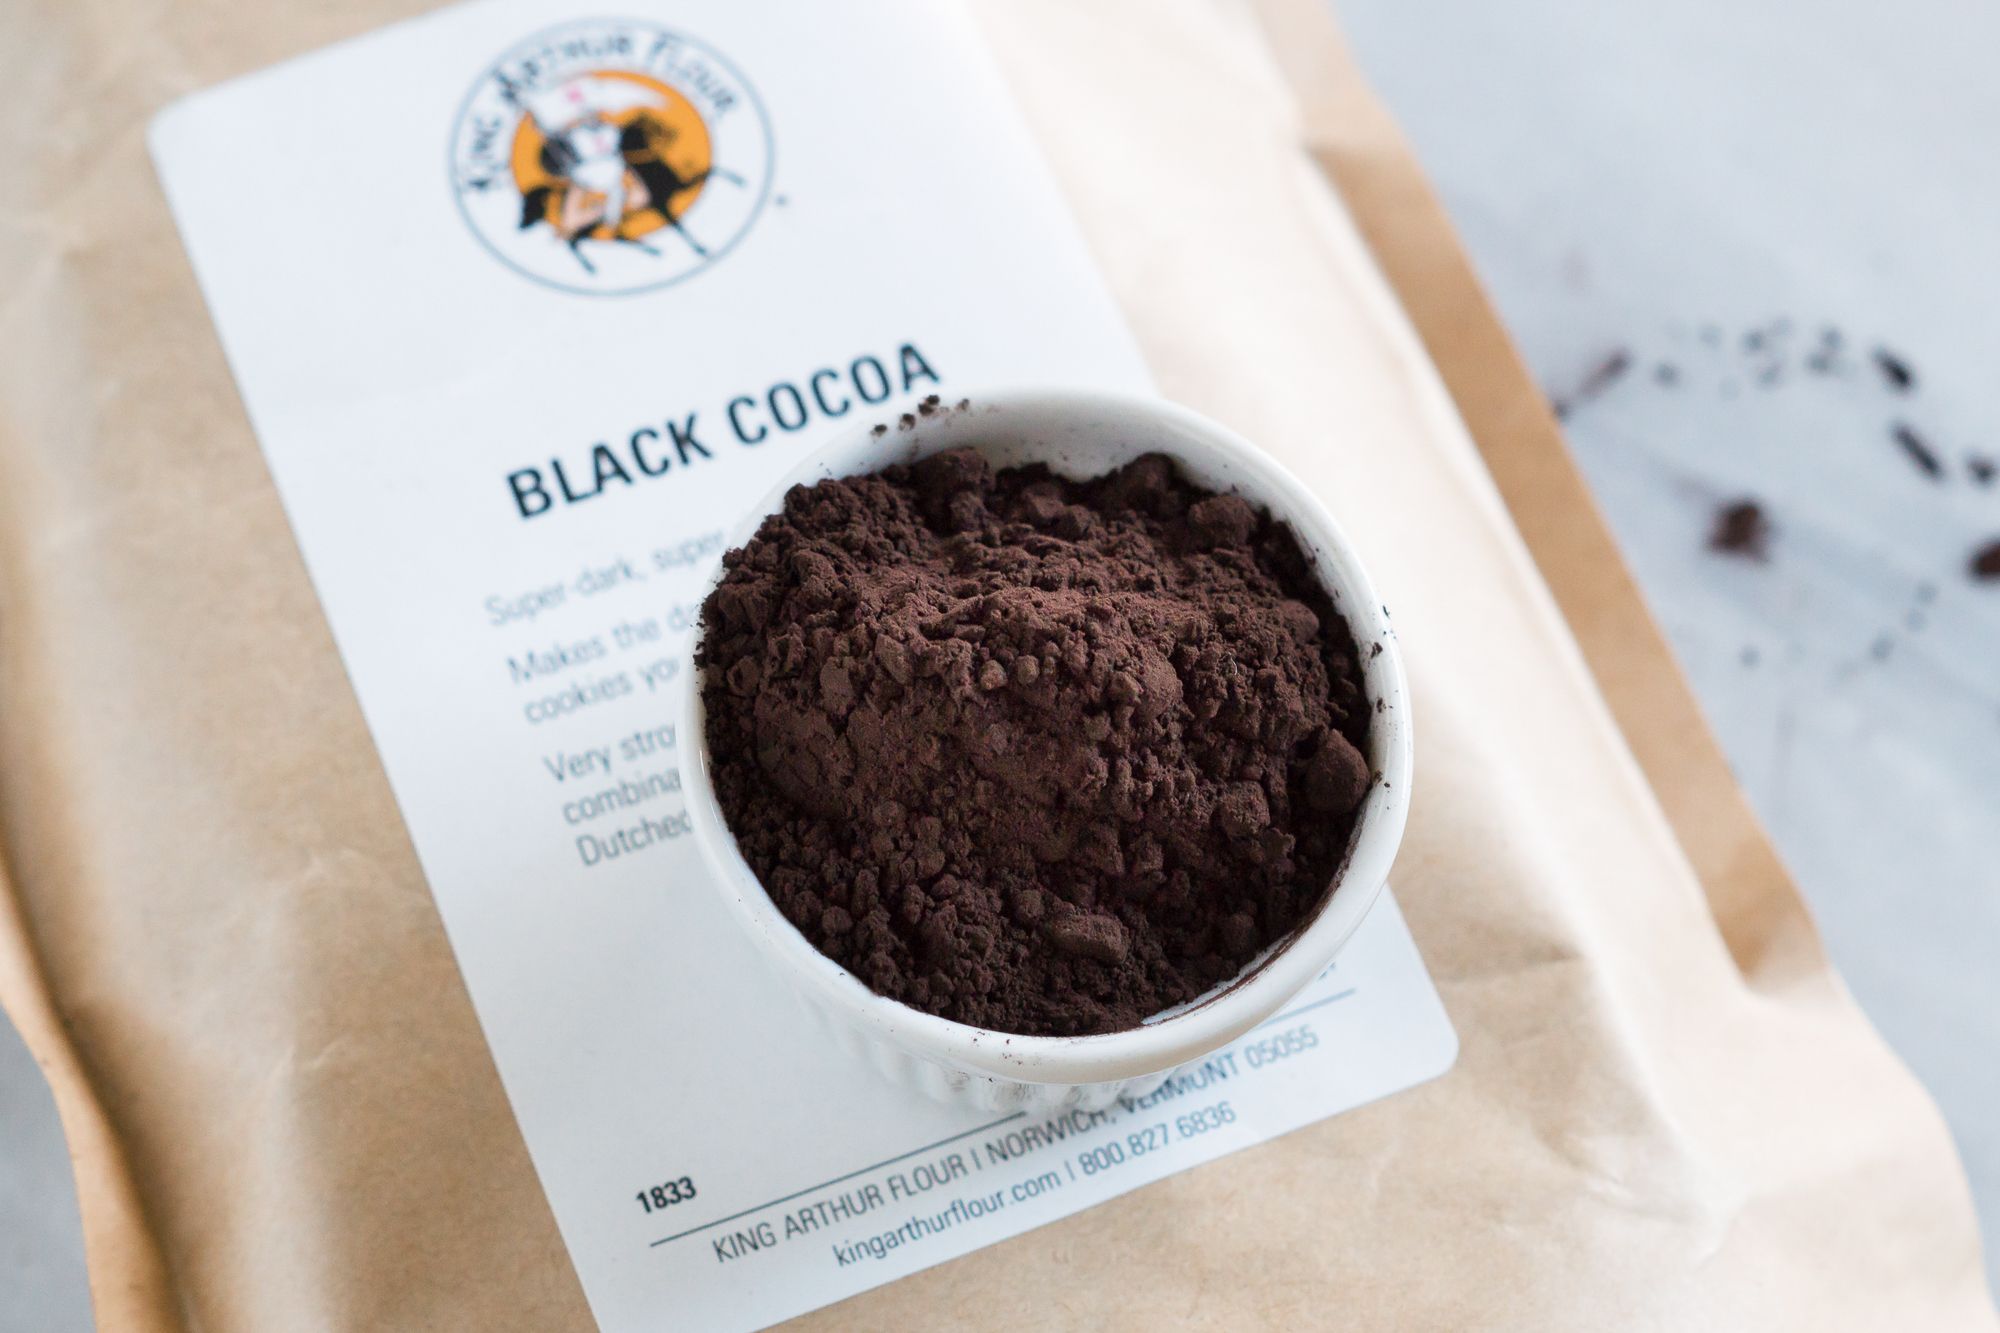 Black Cocoa